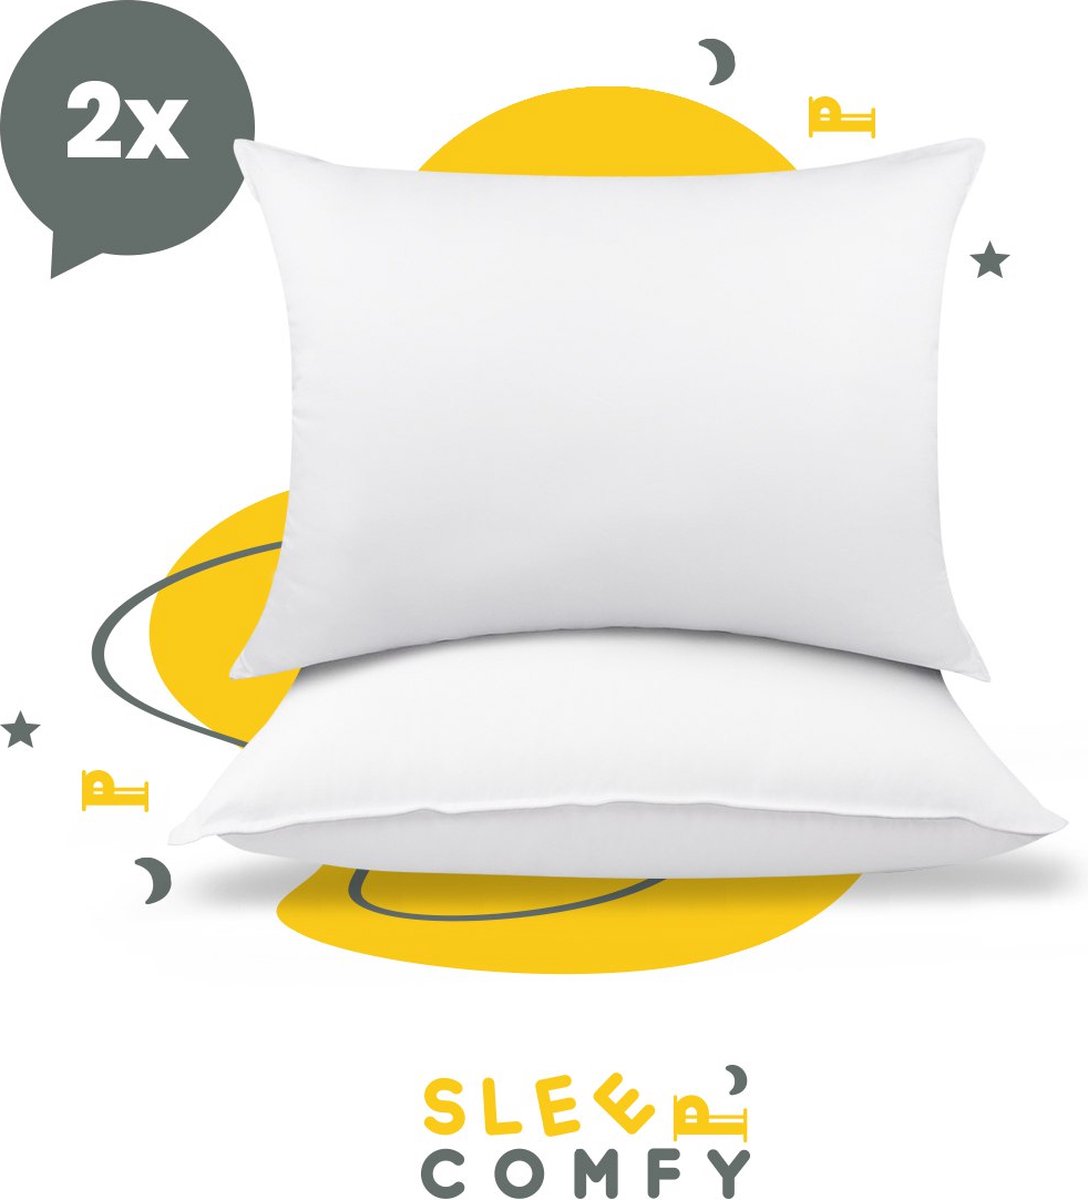 Sleep Comfy - Hoofdkussen Set van 2 - 30 Dagen Proefslapen - Ultiem Comfort Hoofdkussens - Hotelkwaliteit Hoofdkussens - Verlicht Nek- en Rugklachten - Geschikt voor Alle Slaaphoudingen - Katoen - Orthopedisch - Ergonomisch Design | 60x70 cm - Sleep comfy